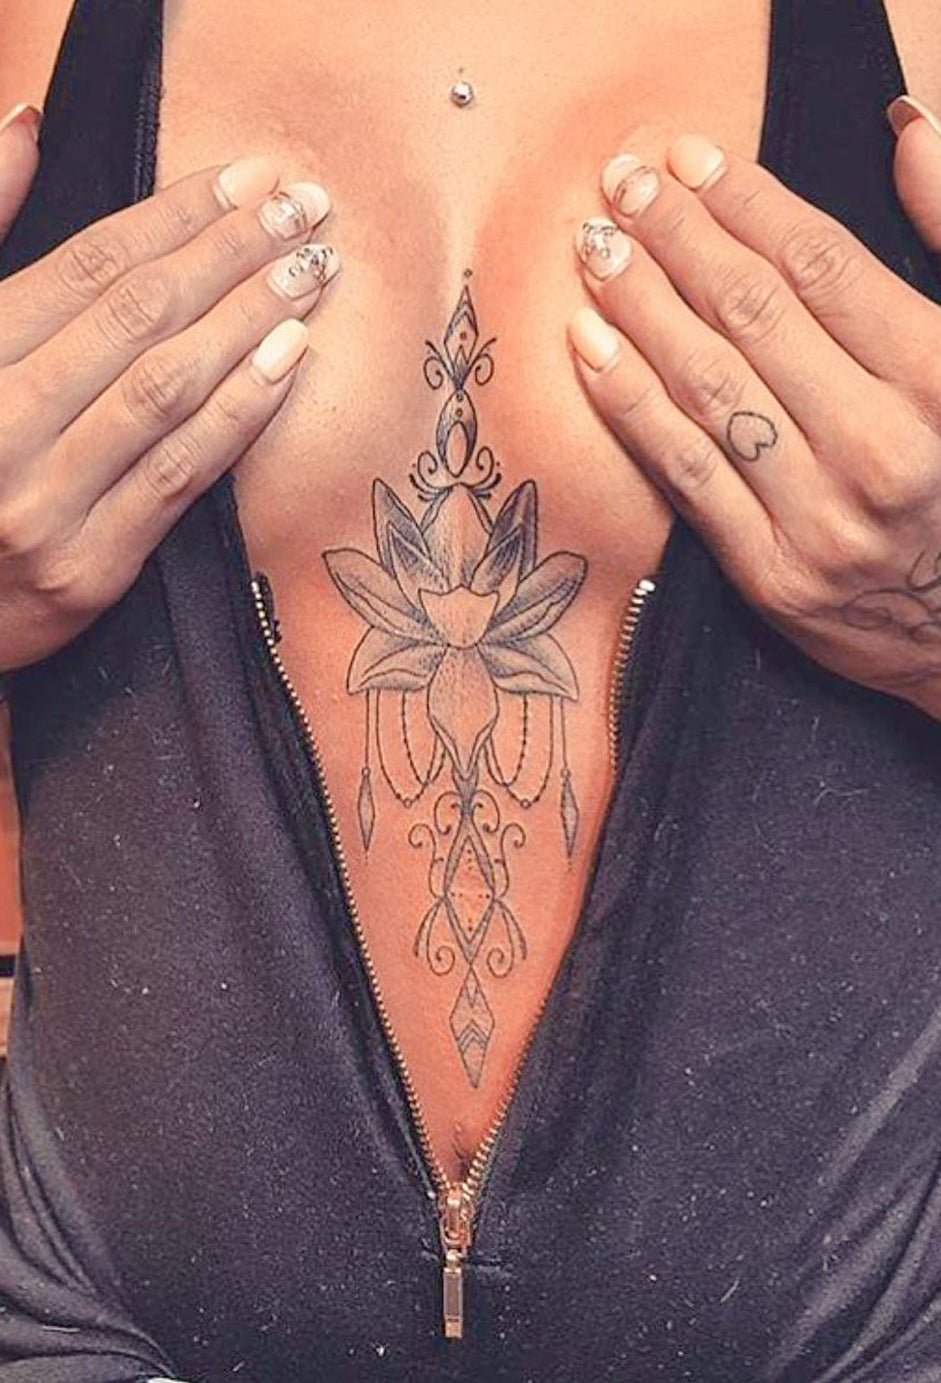 Sacred Geometric Diamond Lotus Sternum Tattoo Ideas for Women -  Sagrado Geométrico Diamond Lotus pecho Tattoo Ideas para mujeres - www.MyBodiArt.com